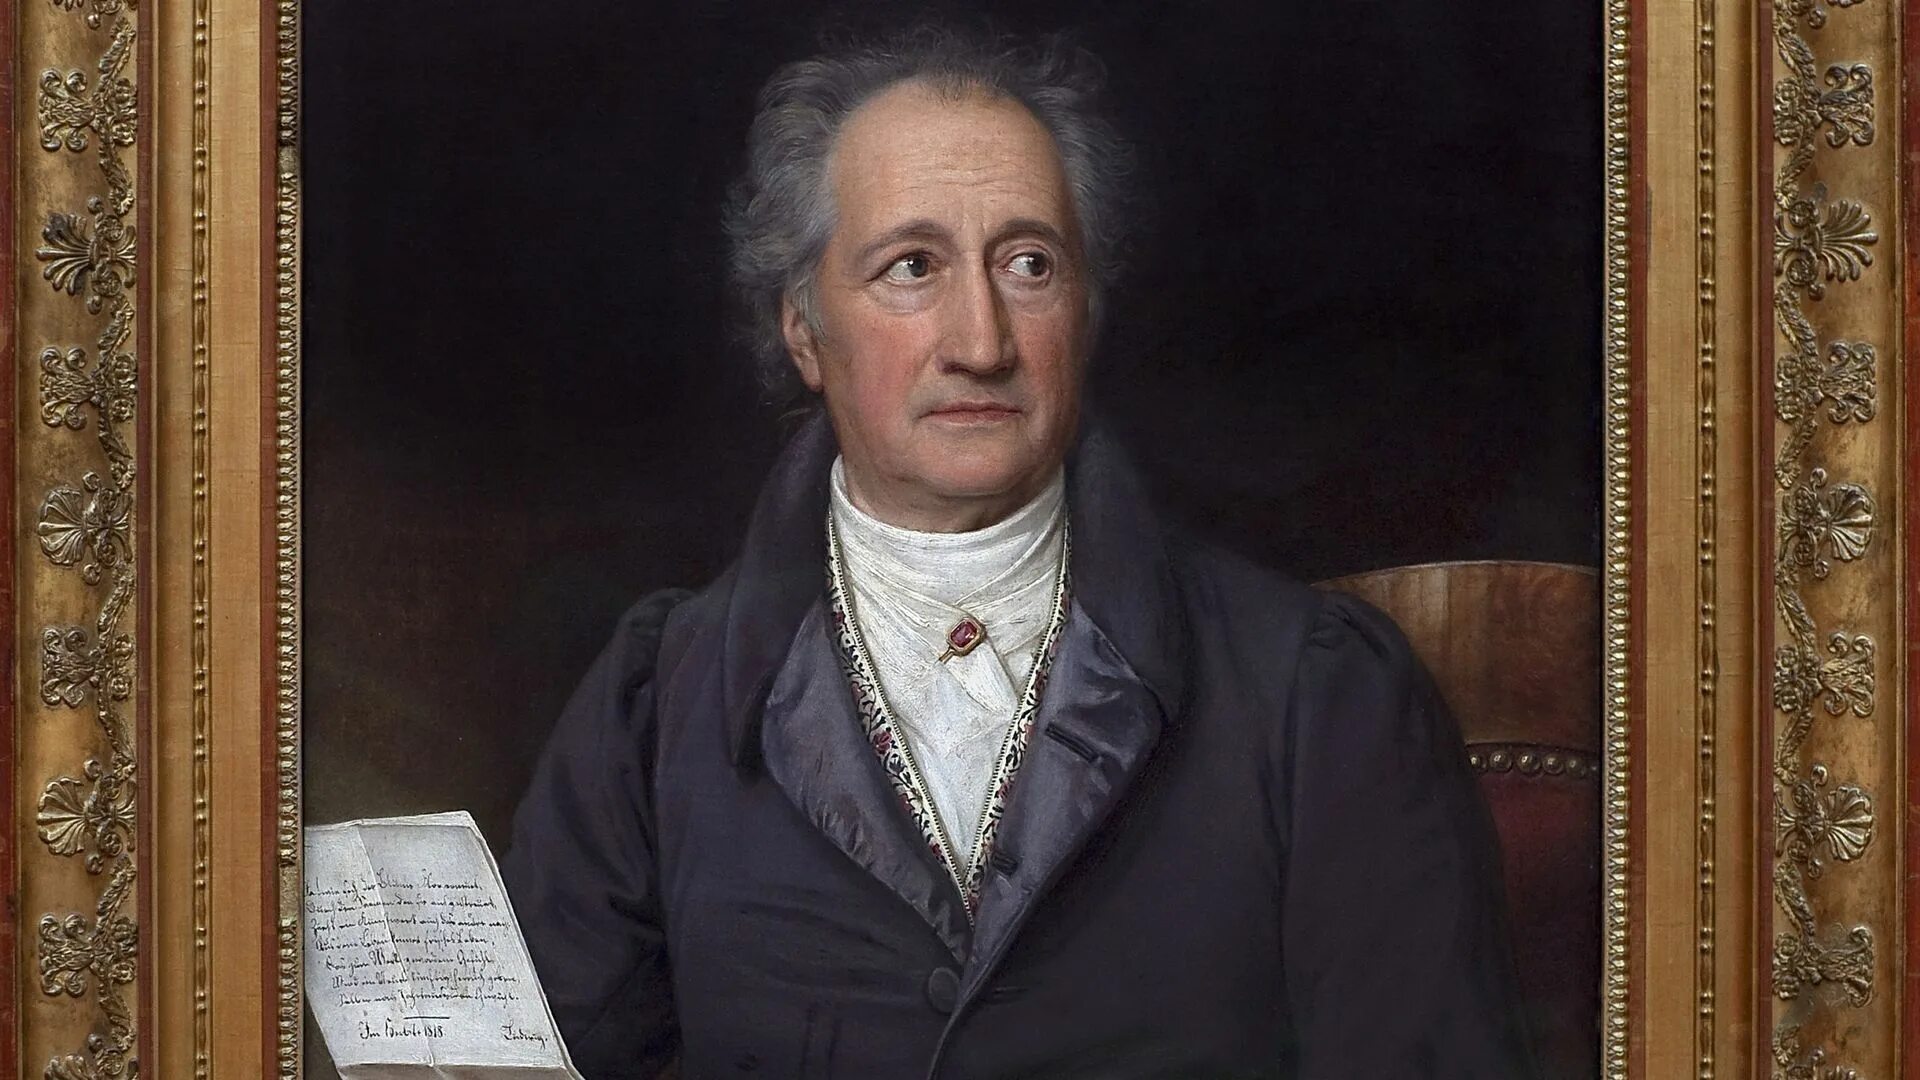 Гете орг. Иоганн Вольфганг гёте. Иоганн Вольфганг фон гёте (Johann Wolfgang von Goethe) .... Иоганн Вольфганг фон гёте (1749-1832). Гёте портрет.